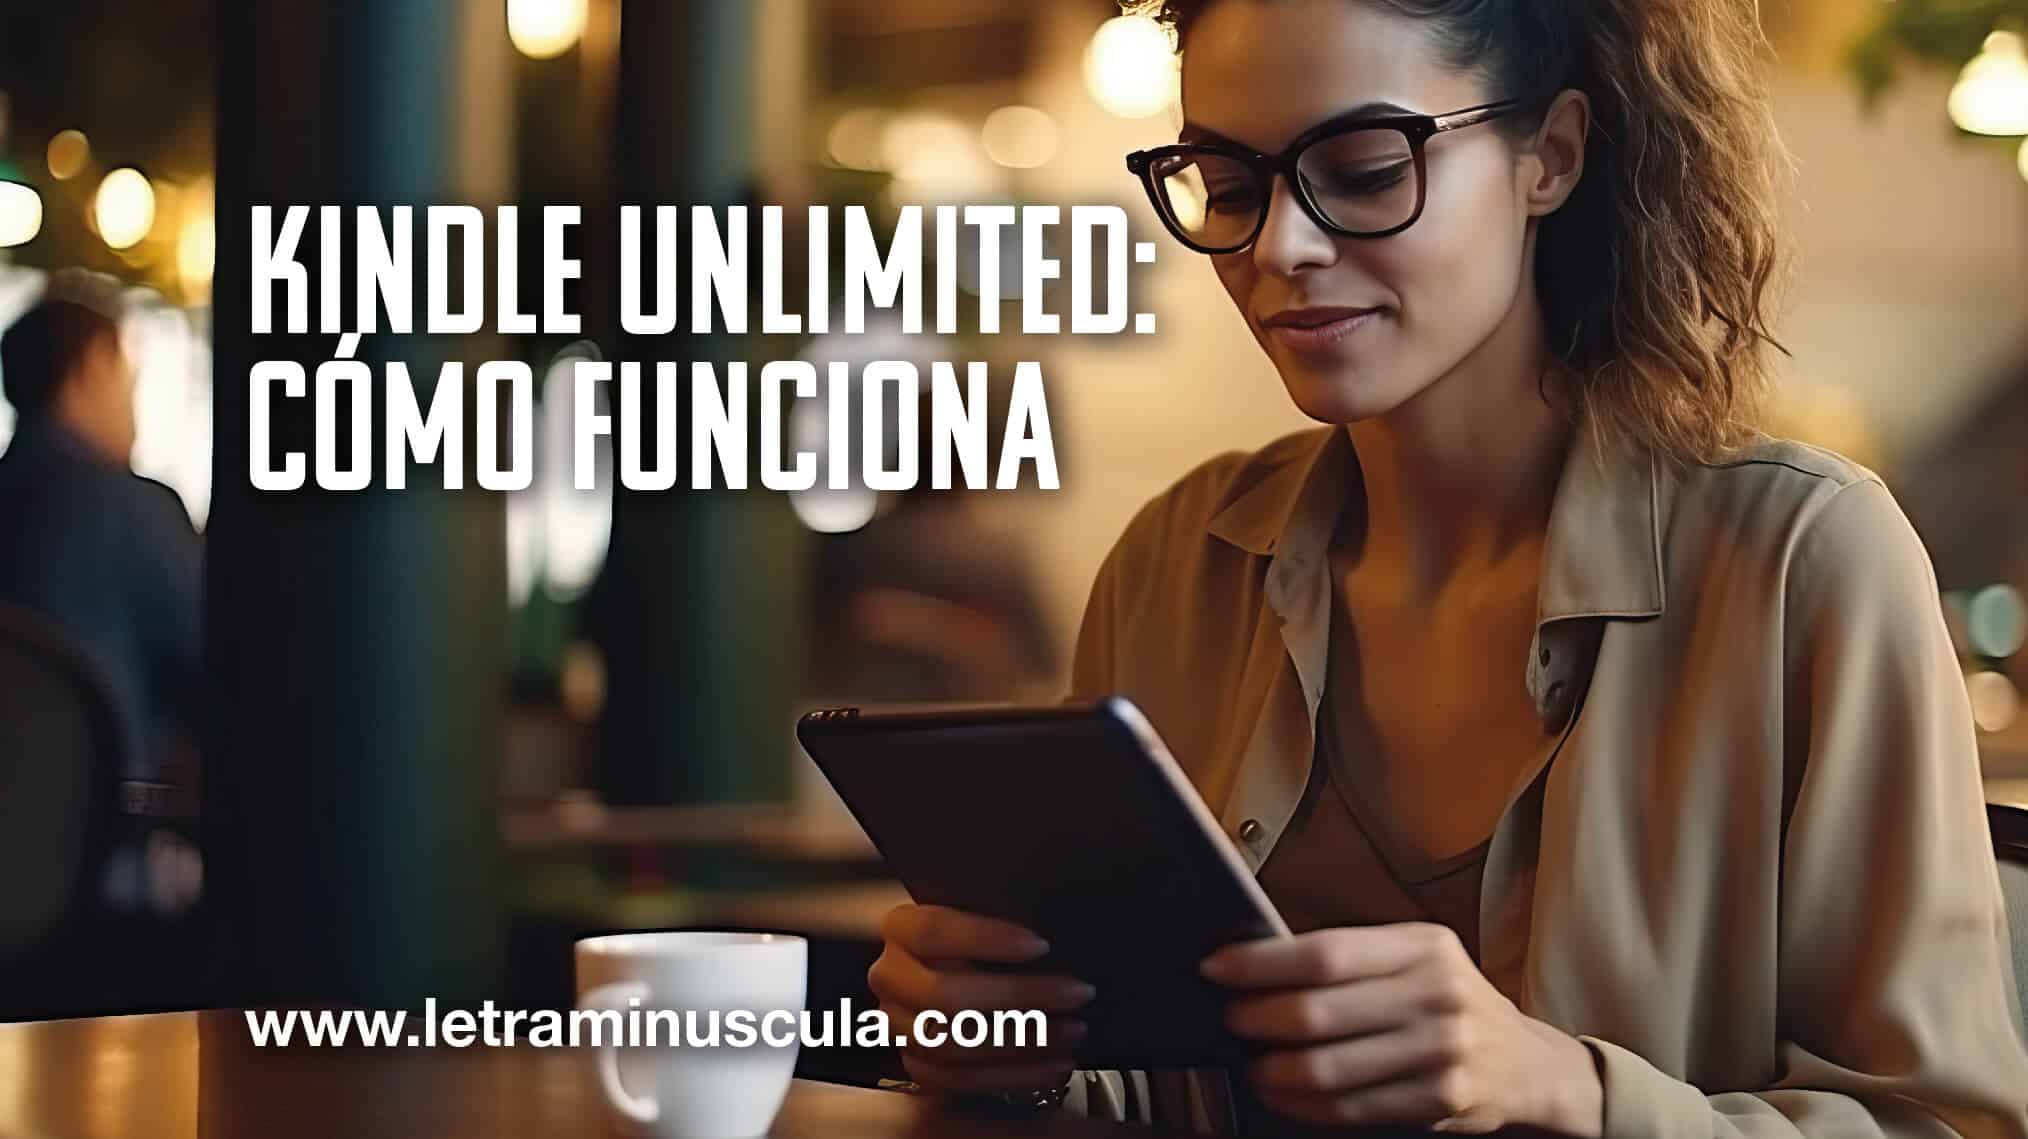 Kindle Unlimited: Cómo funciona_MINIATURA